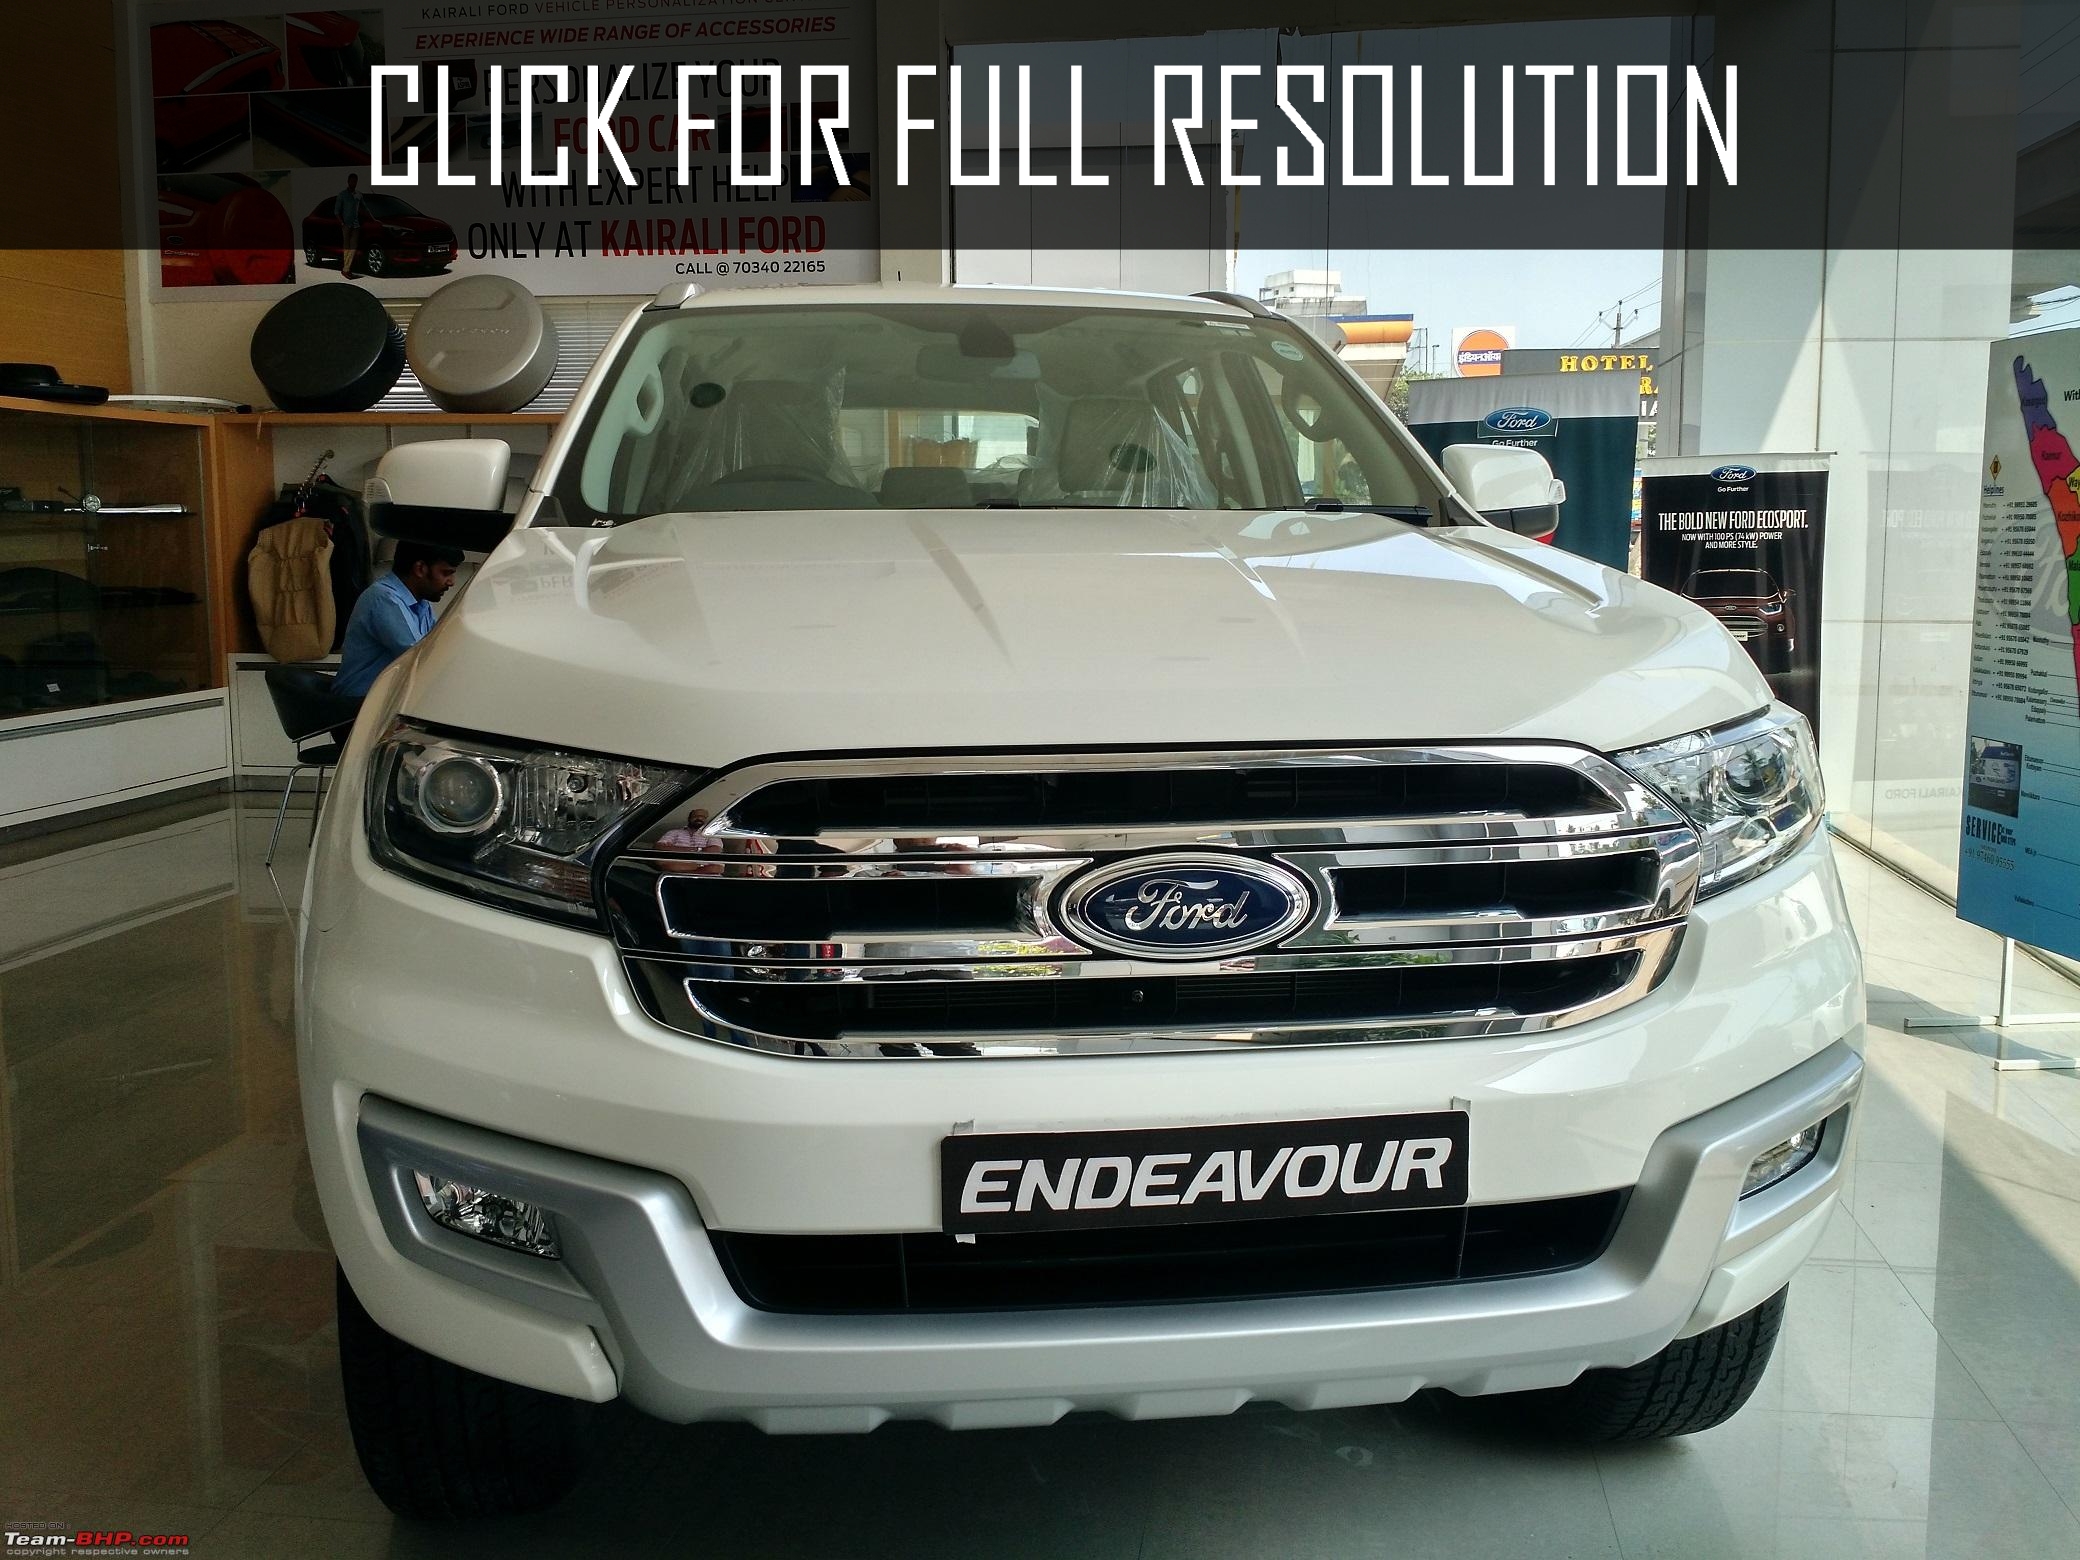 Ford Endeavour White